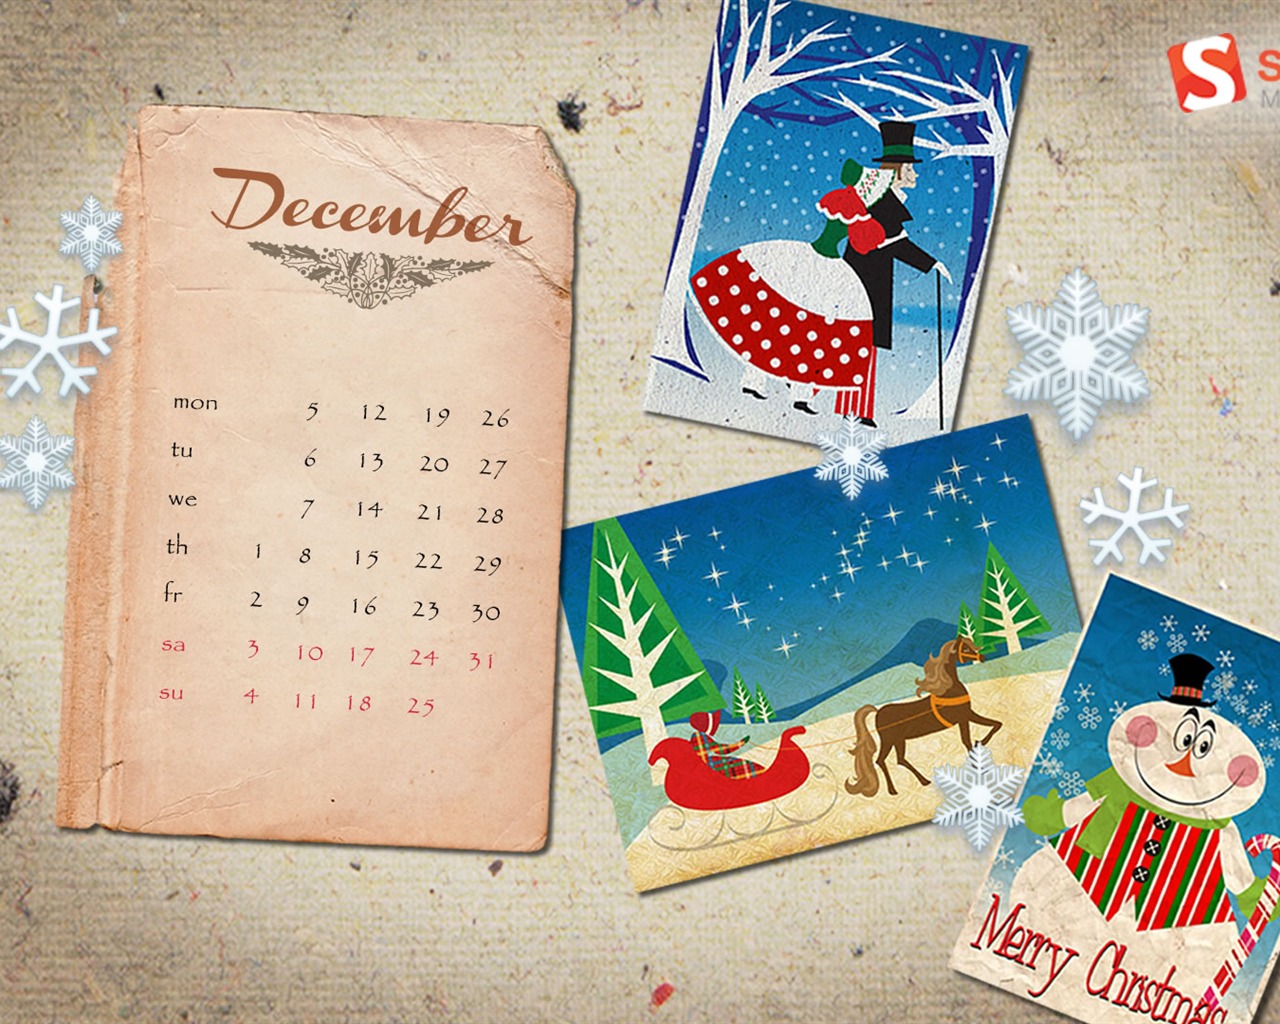 December 2011 Calendar wallpaper (2) #8 - 1280x1024